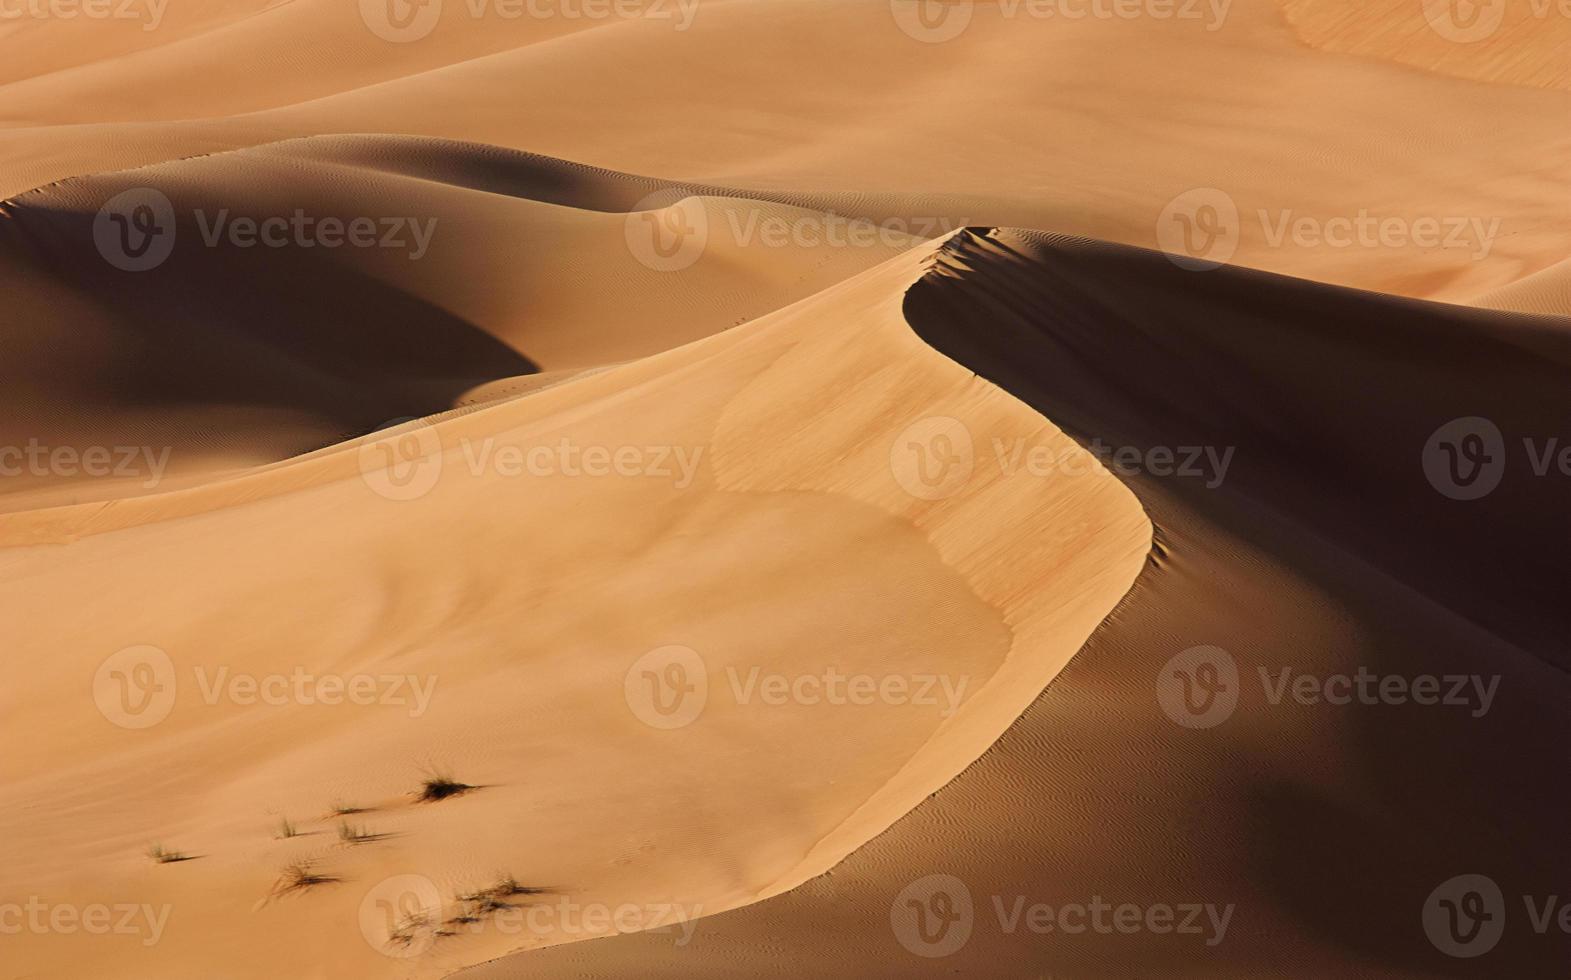 Dubai desert with beautiful sandunes photo